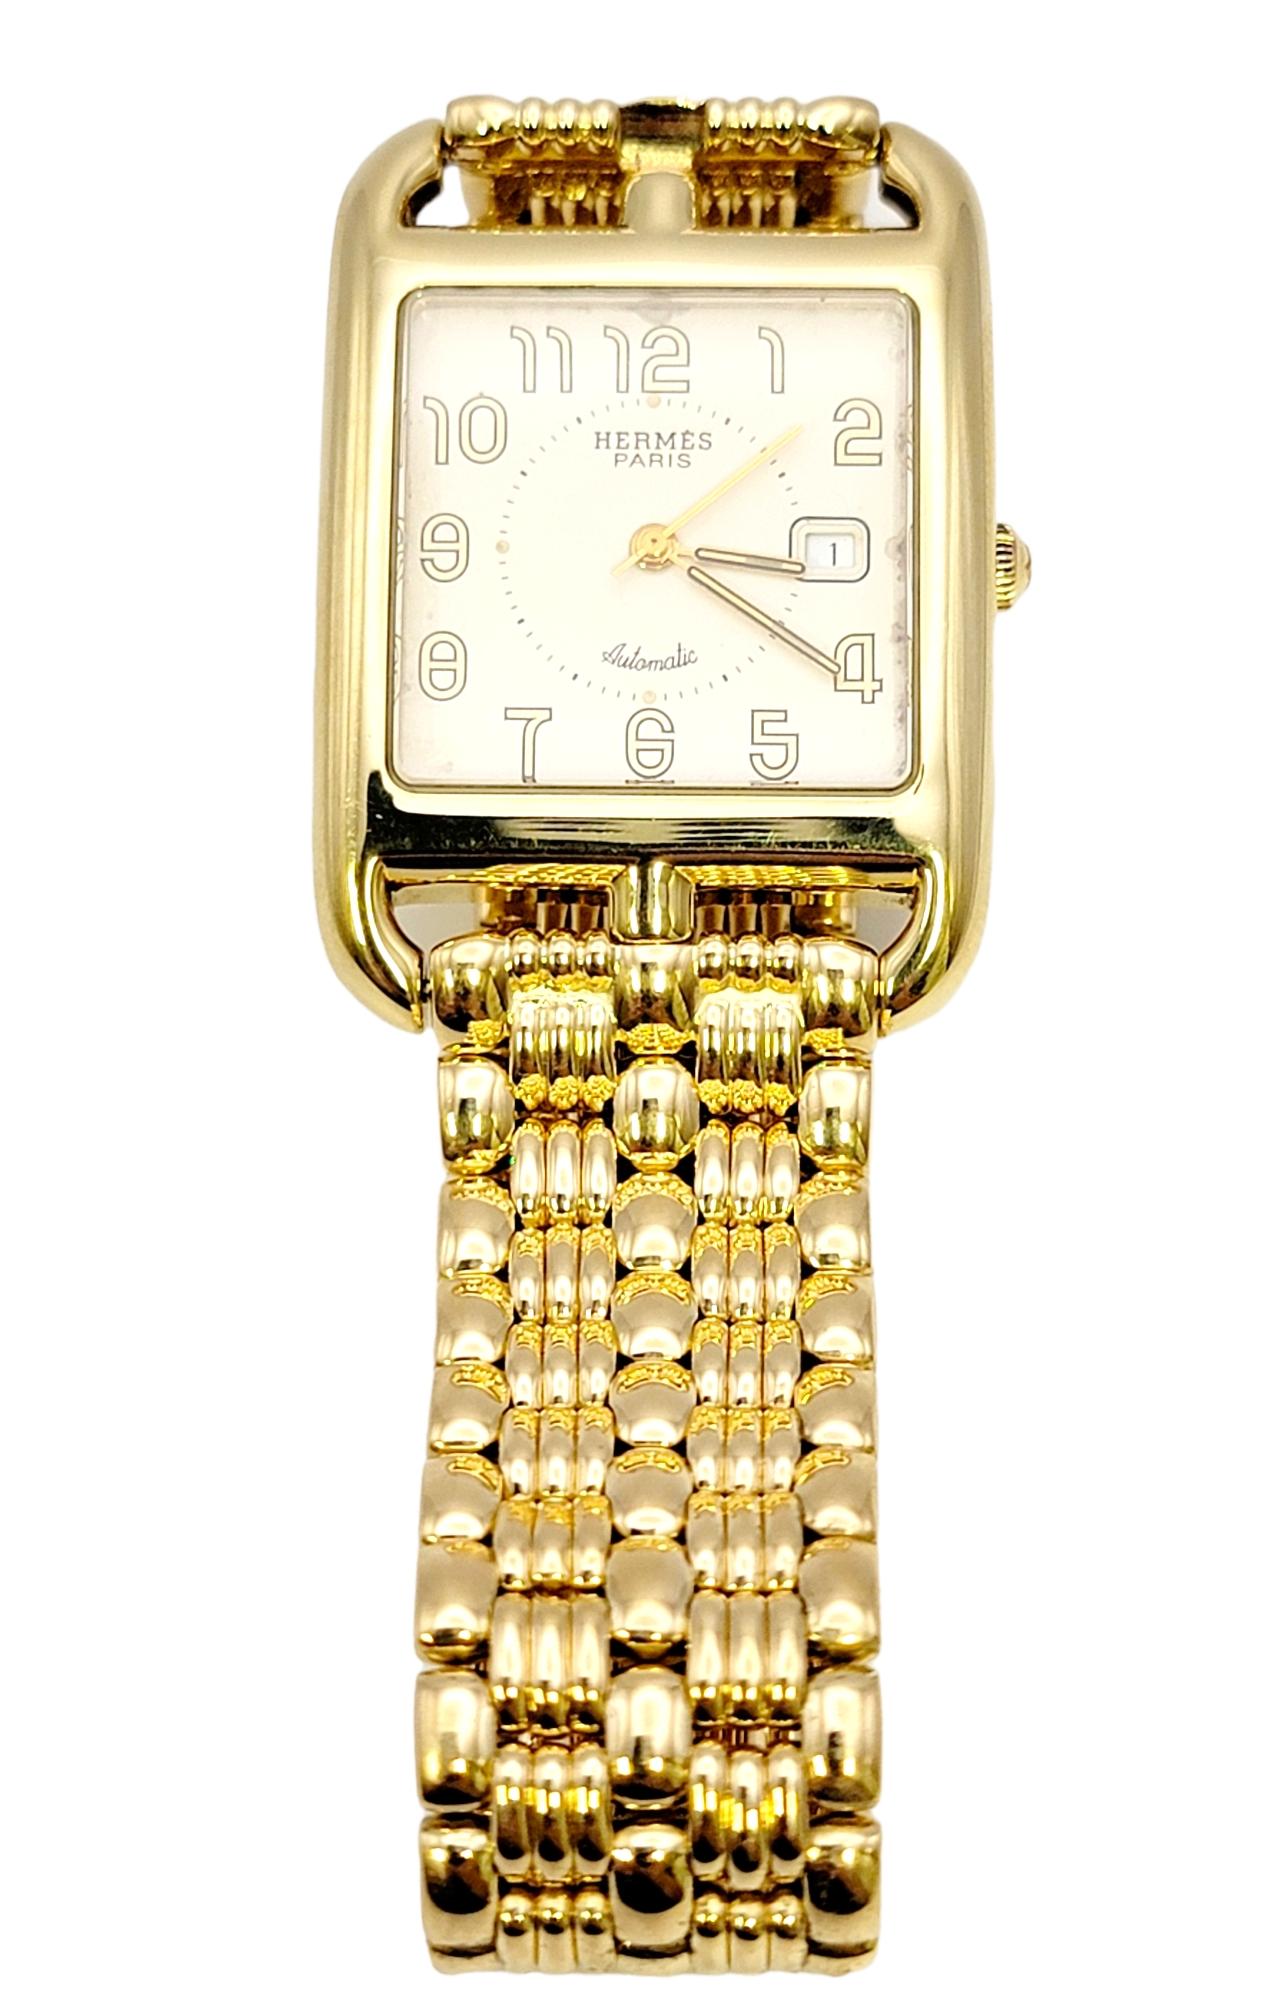 Der Inbegriff von Eleganz und Stil: die exquisite Unisex-Armbanduhr Hermes Cape Cod aus 18 Karat Gelbgold. Dieser sorgfältig gefertigte Zeitmesser verbindet nahtlos zeitgenössisches Design mit zeitloser Raffinesse.

Ausgestattet mit einem Schweizer